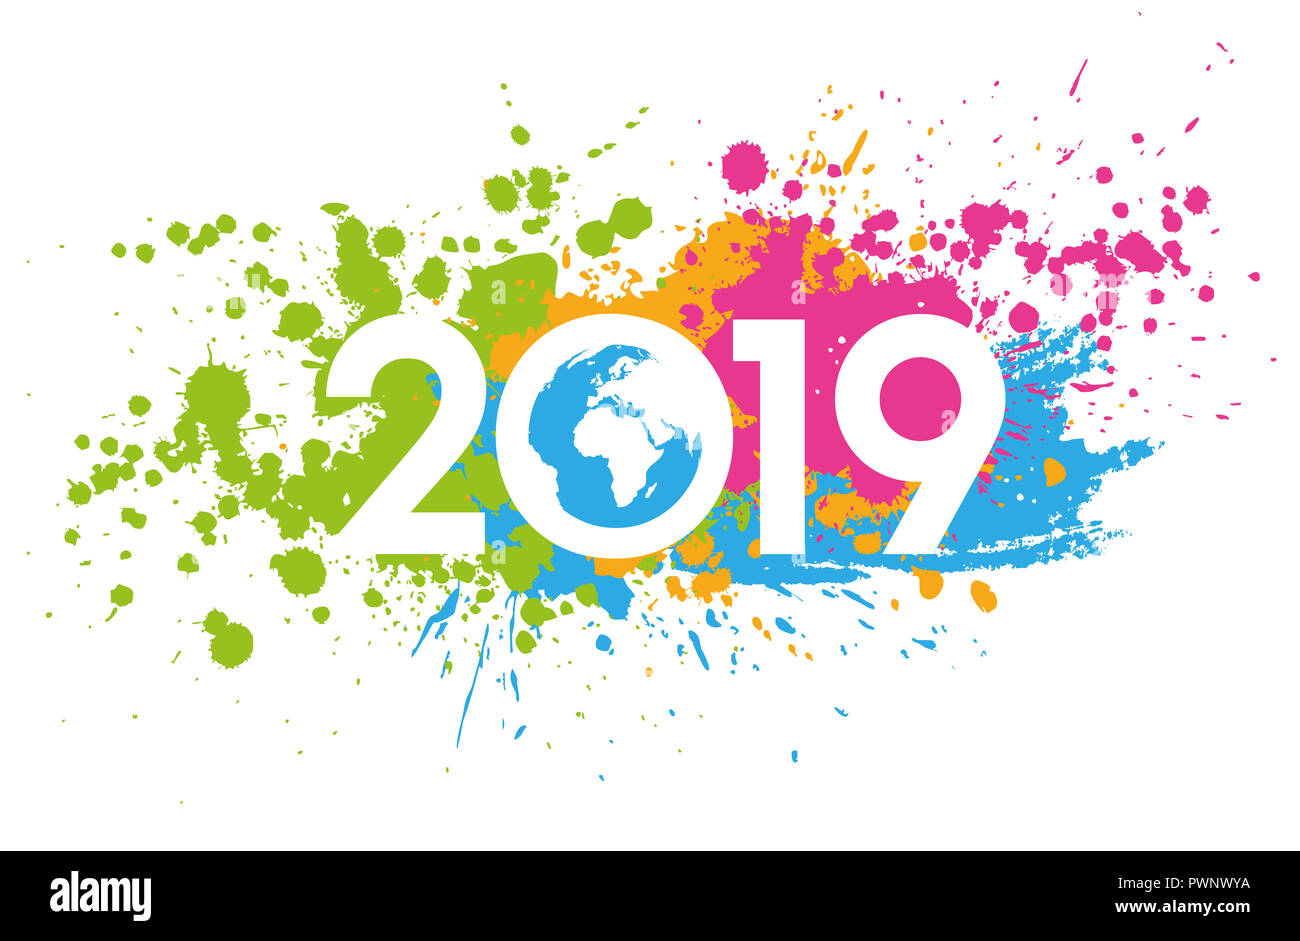 Nouvelle année 2019 avec les taches colorées peintes date, carte du monde à l'intérieur Banque D'Images